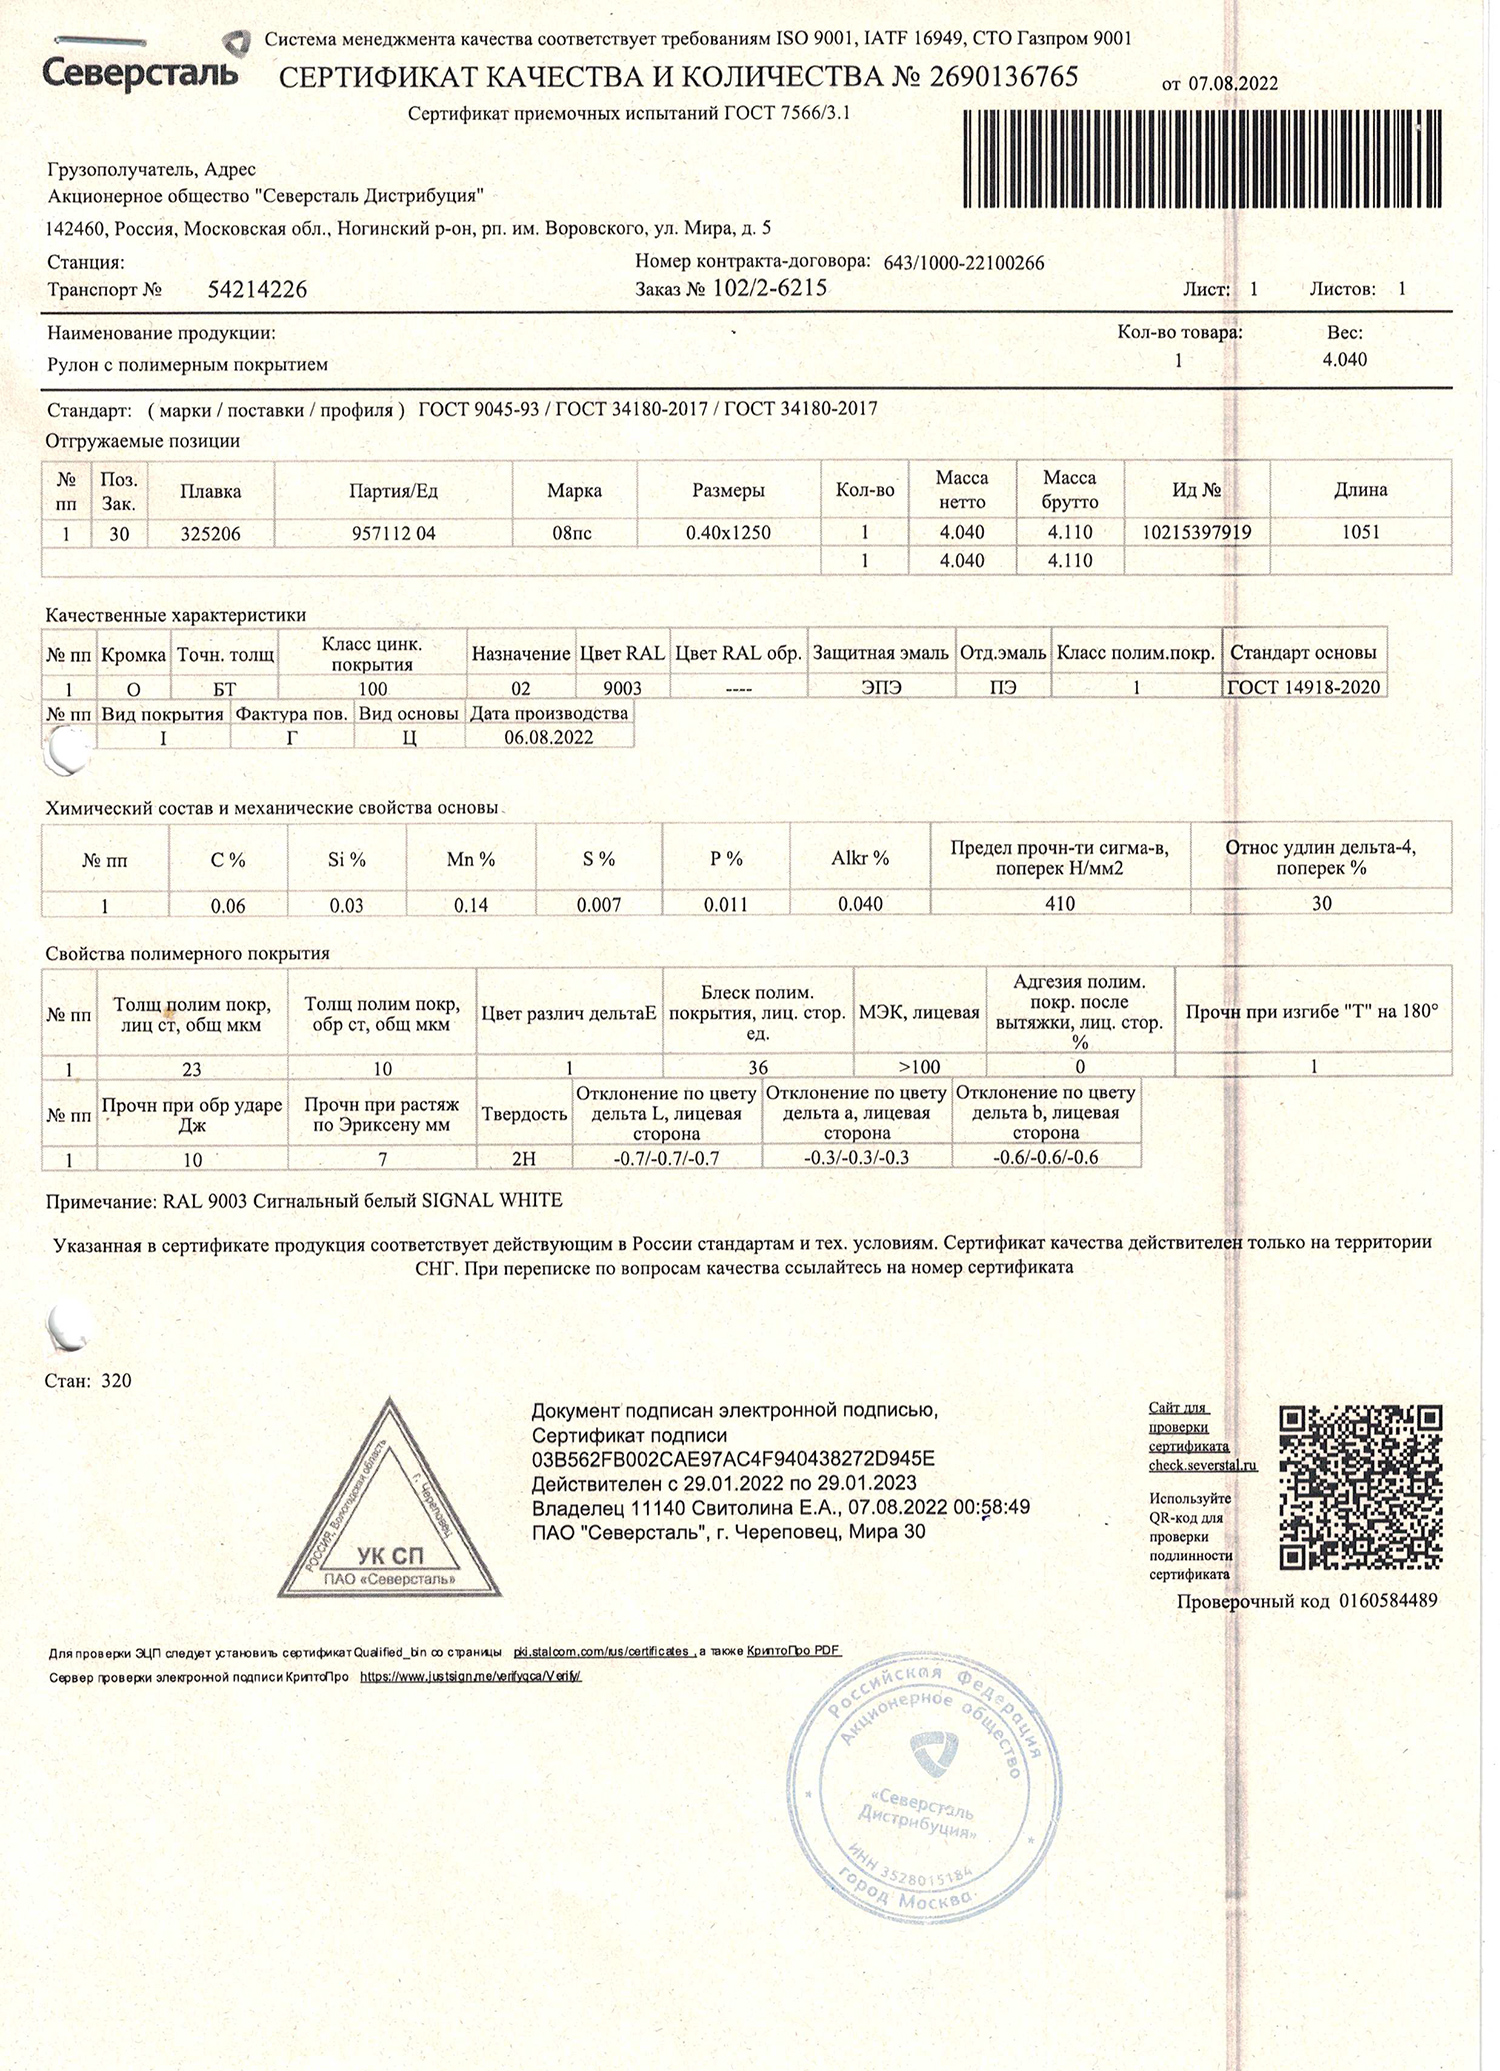 Северсталь, сертификат соответствия качества и количества, 29.01.2023